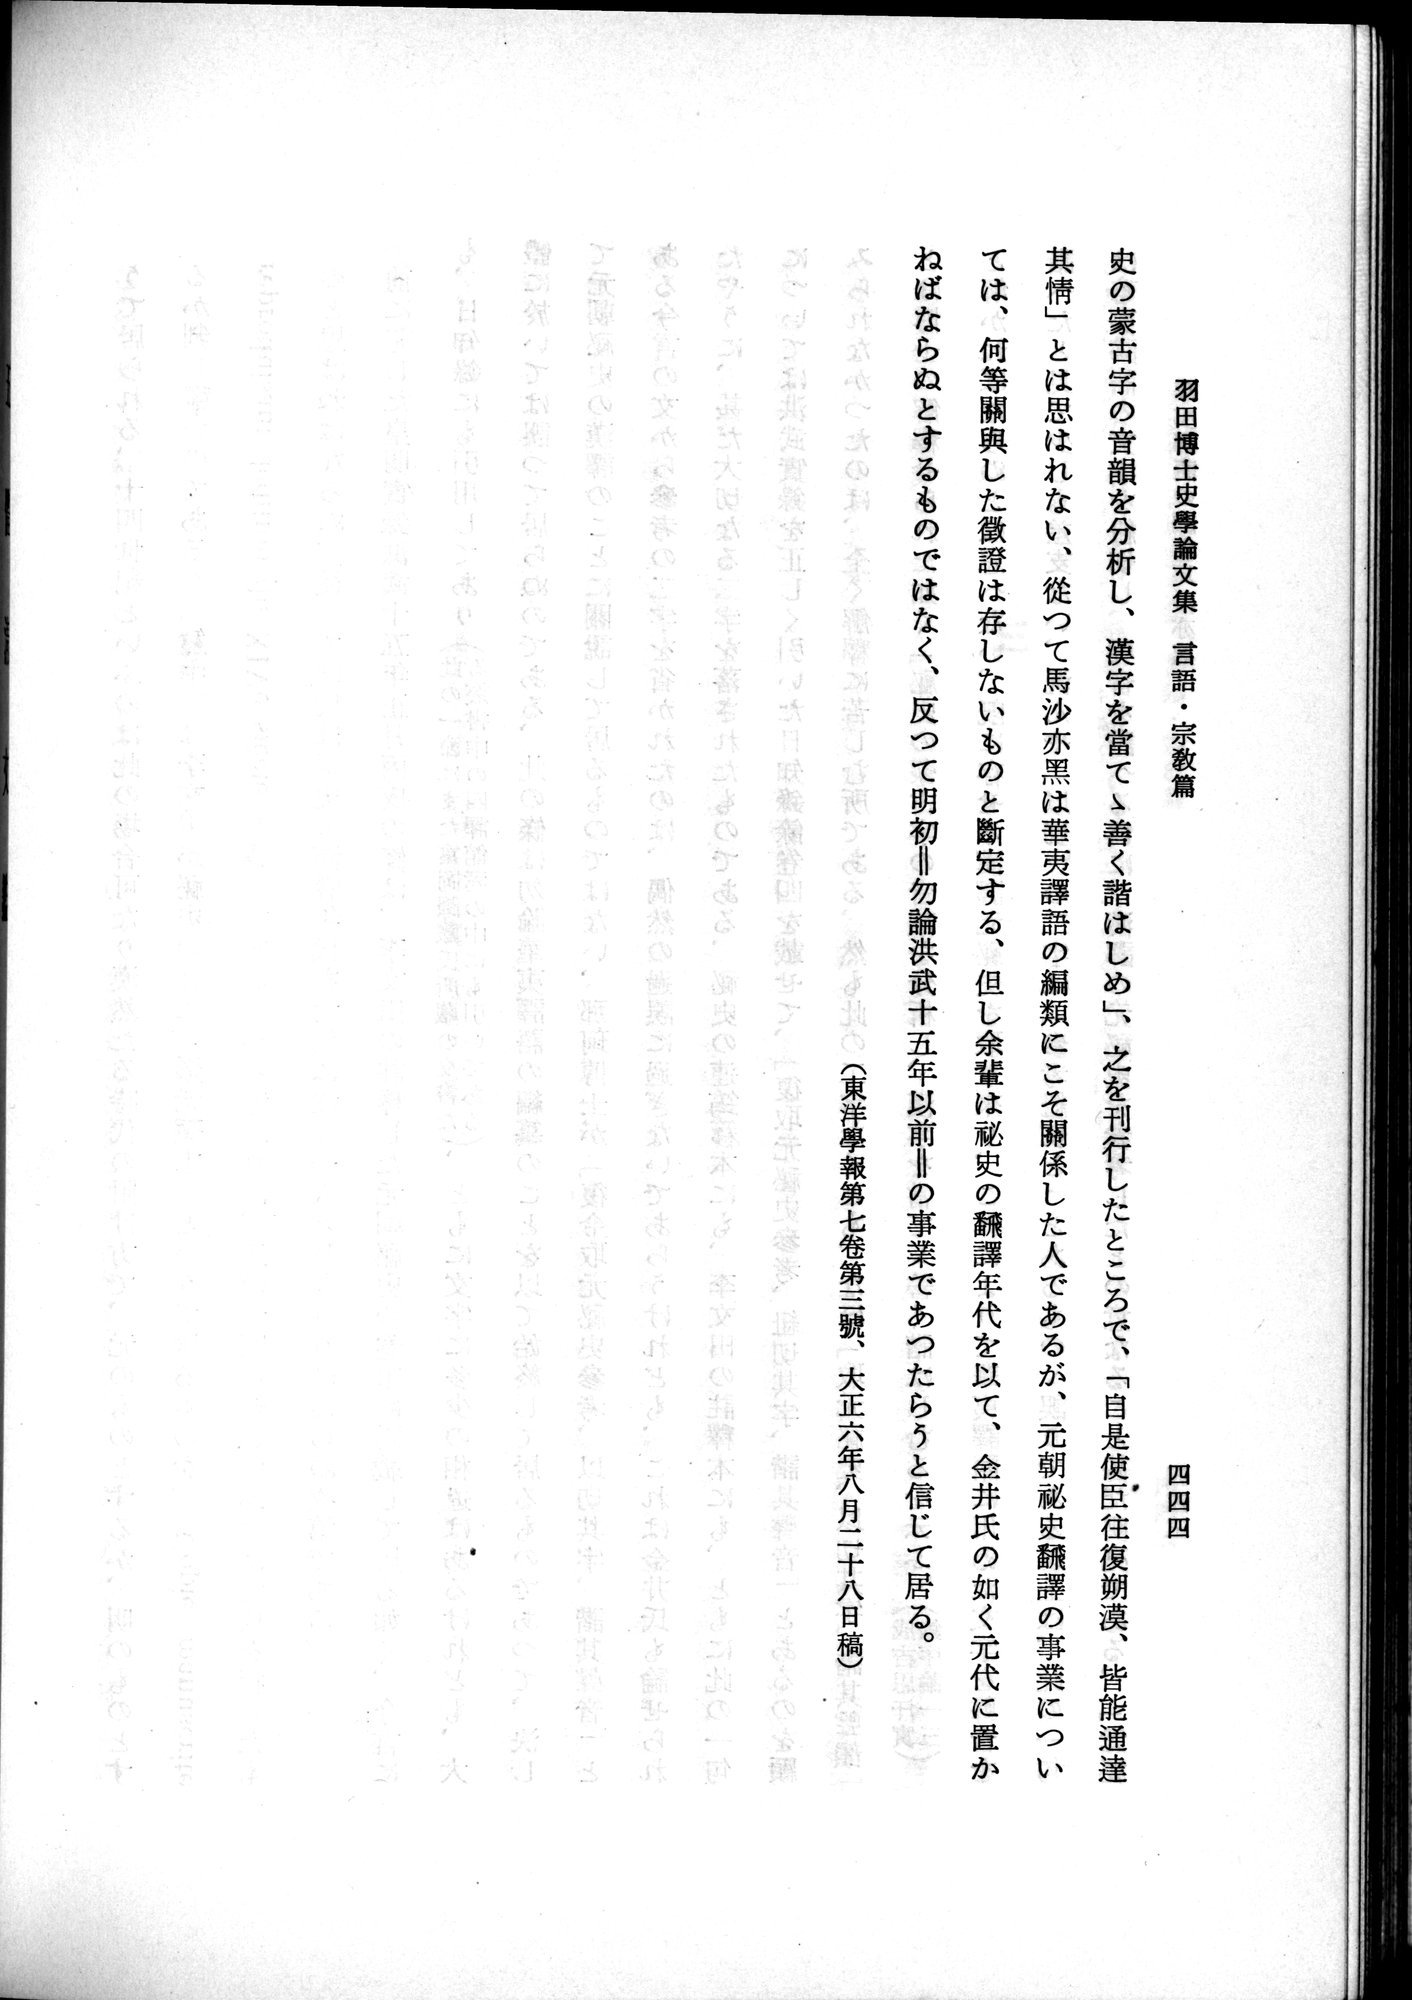 羽田博士史学論文集 : vol.2 / 506 ページ（白黒高解像度画像）